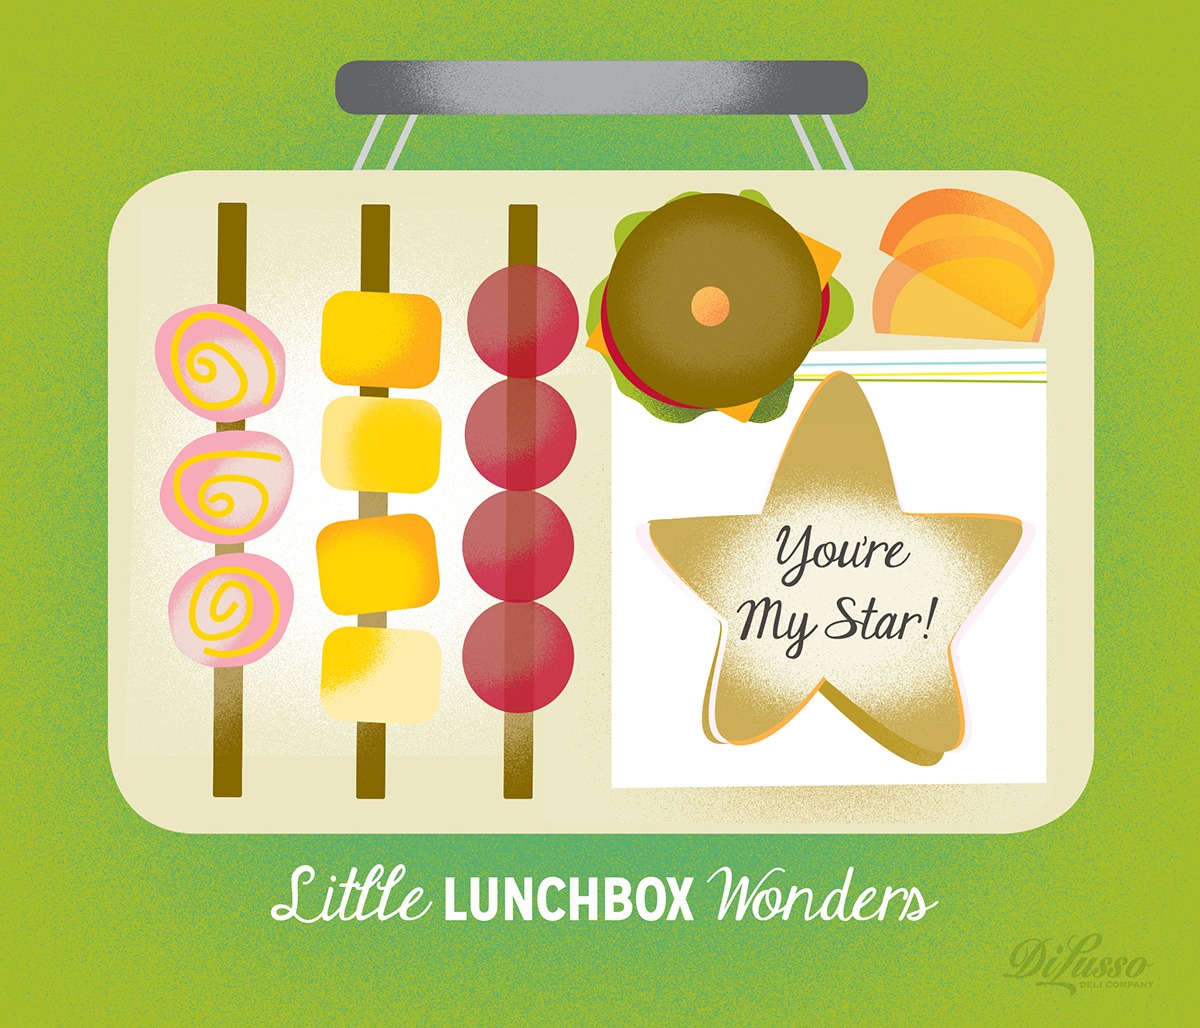 Lunchbox Wonders